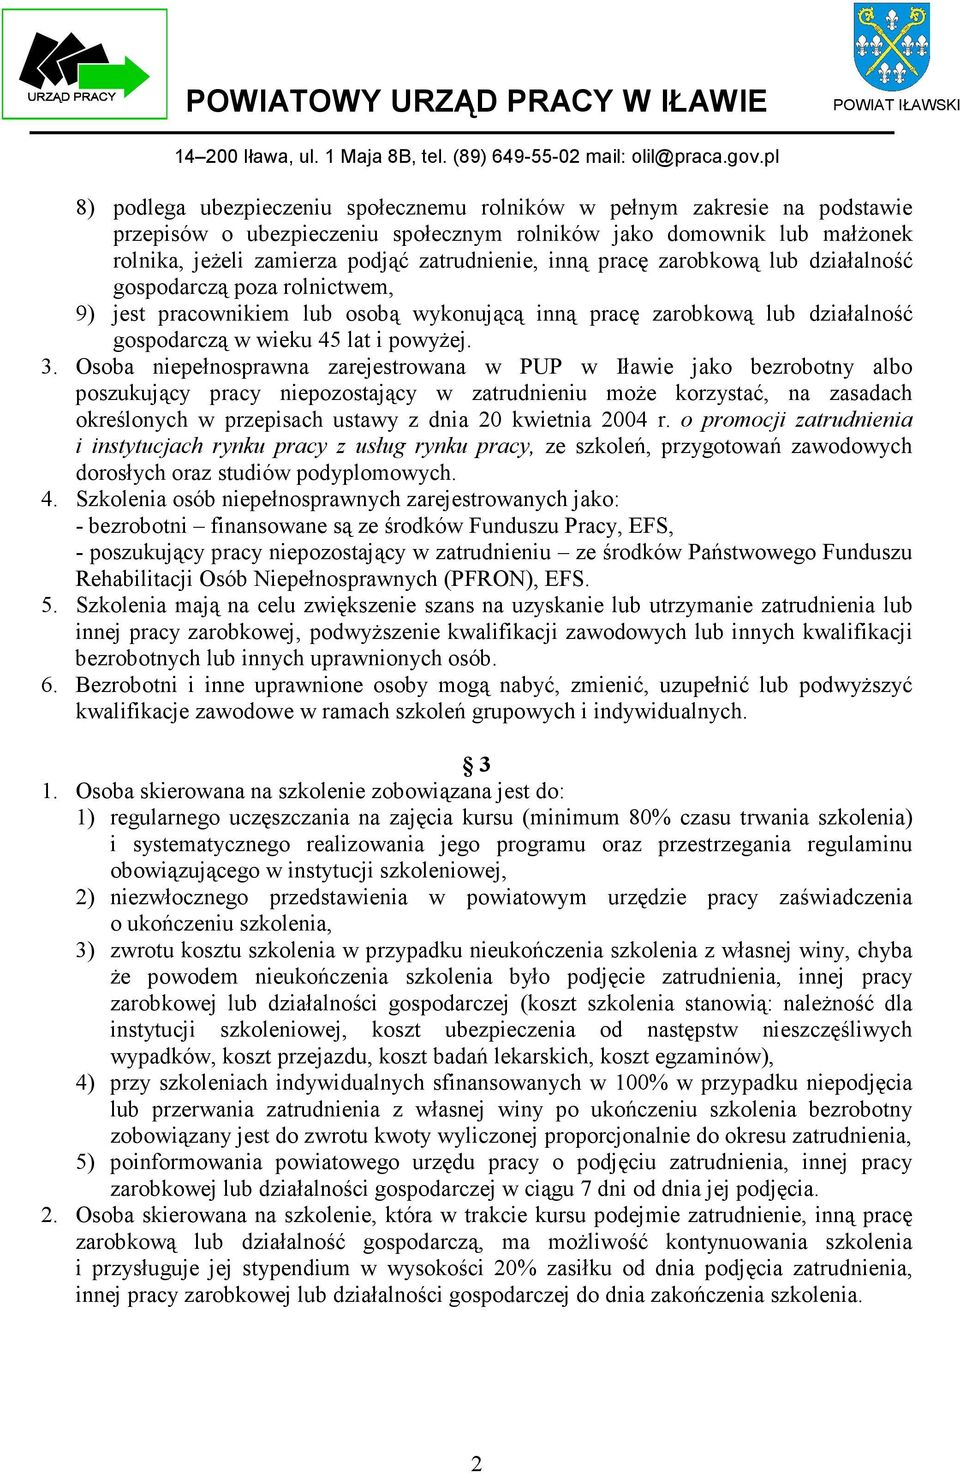 Osoba niepełnosprawna zarejestrowana w PUP w Iławie jako bezrobotny albo poszukujący pracy niepozostający w zatrudnieniu może korzystać, na zasadach określonych w przepisach ustawy z dnia 20 kwietnia